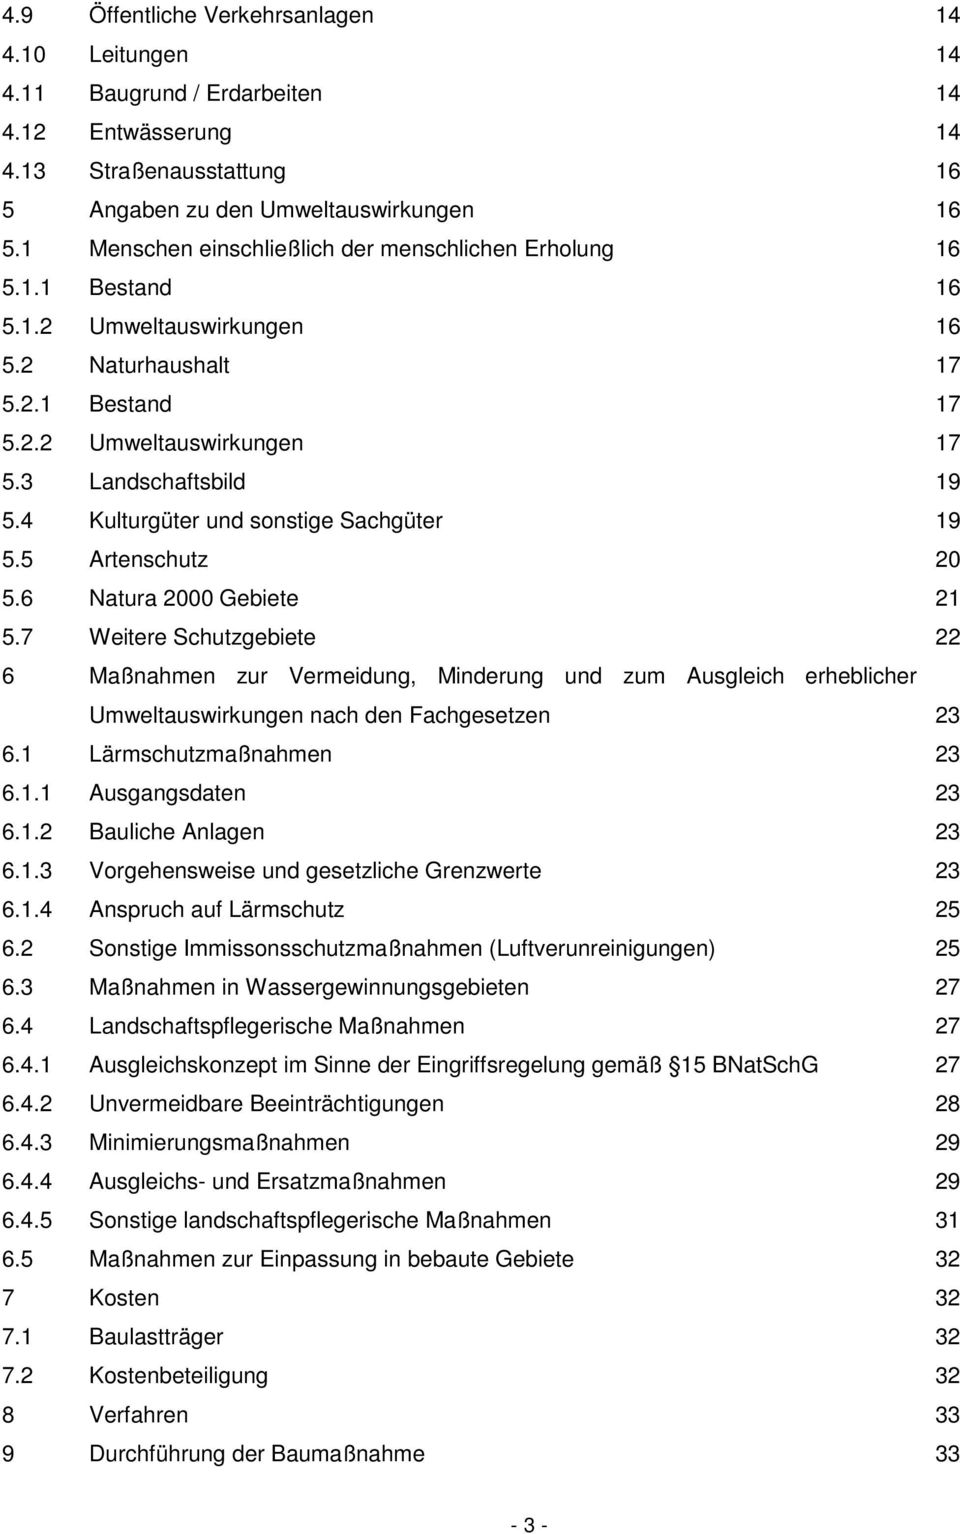 4 Kulturgüter und sonstige Sachgüter 19 5.5 Artenschutz 20 5.6 Natura 2000 Gebiete 21 5.